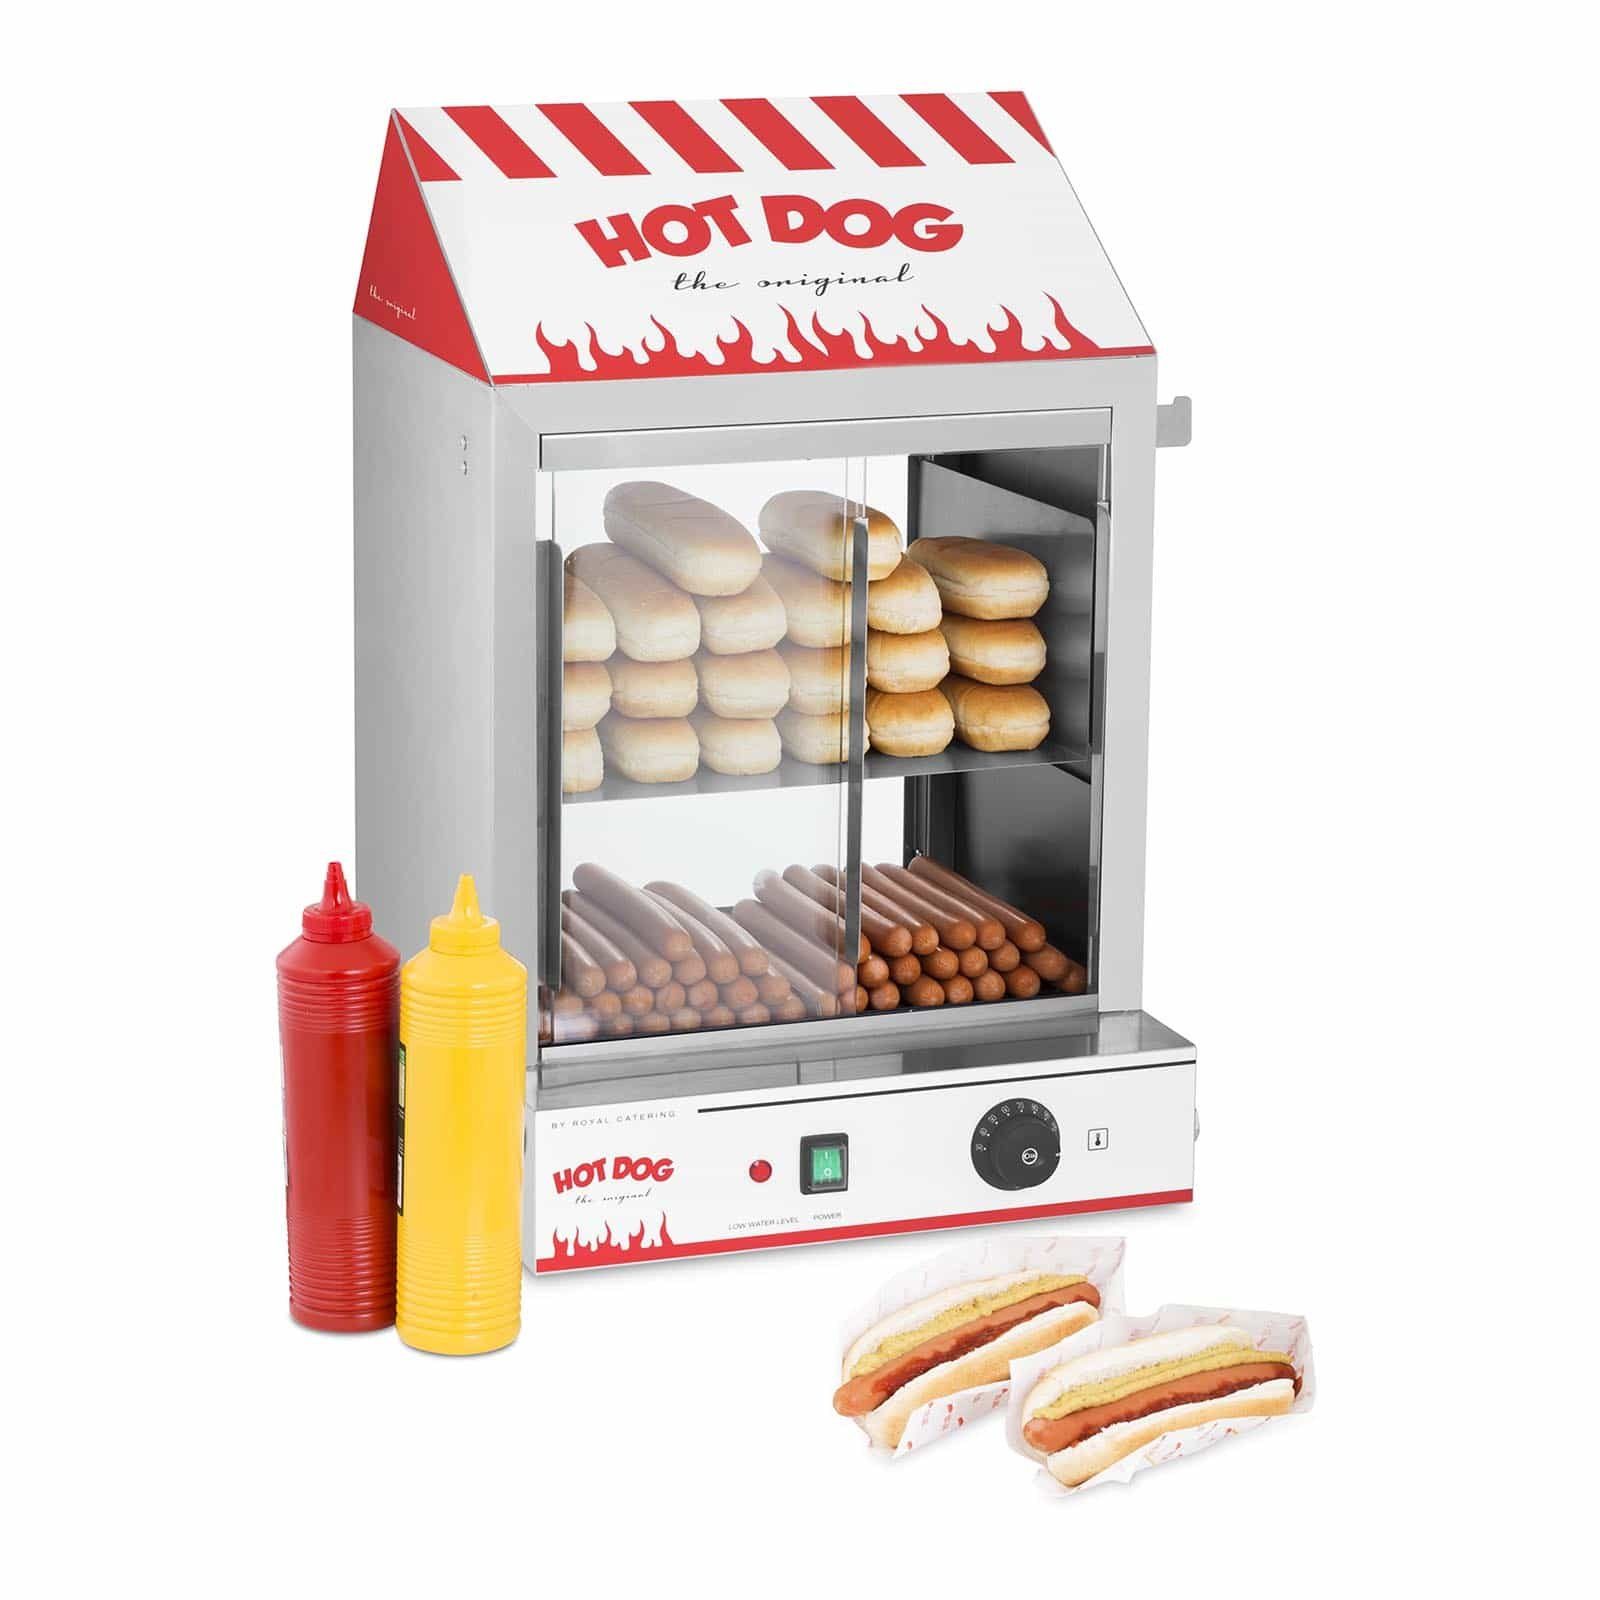 Royal Catering Hotdog-Maker Hot Dog Steamer Würstchenwärmer Maker Maschine Wurstkocher Erhitzer, 2000 W